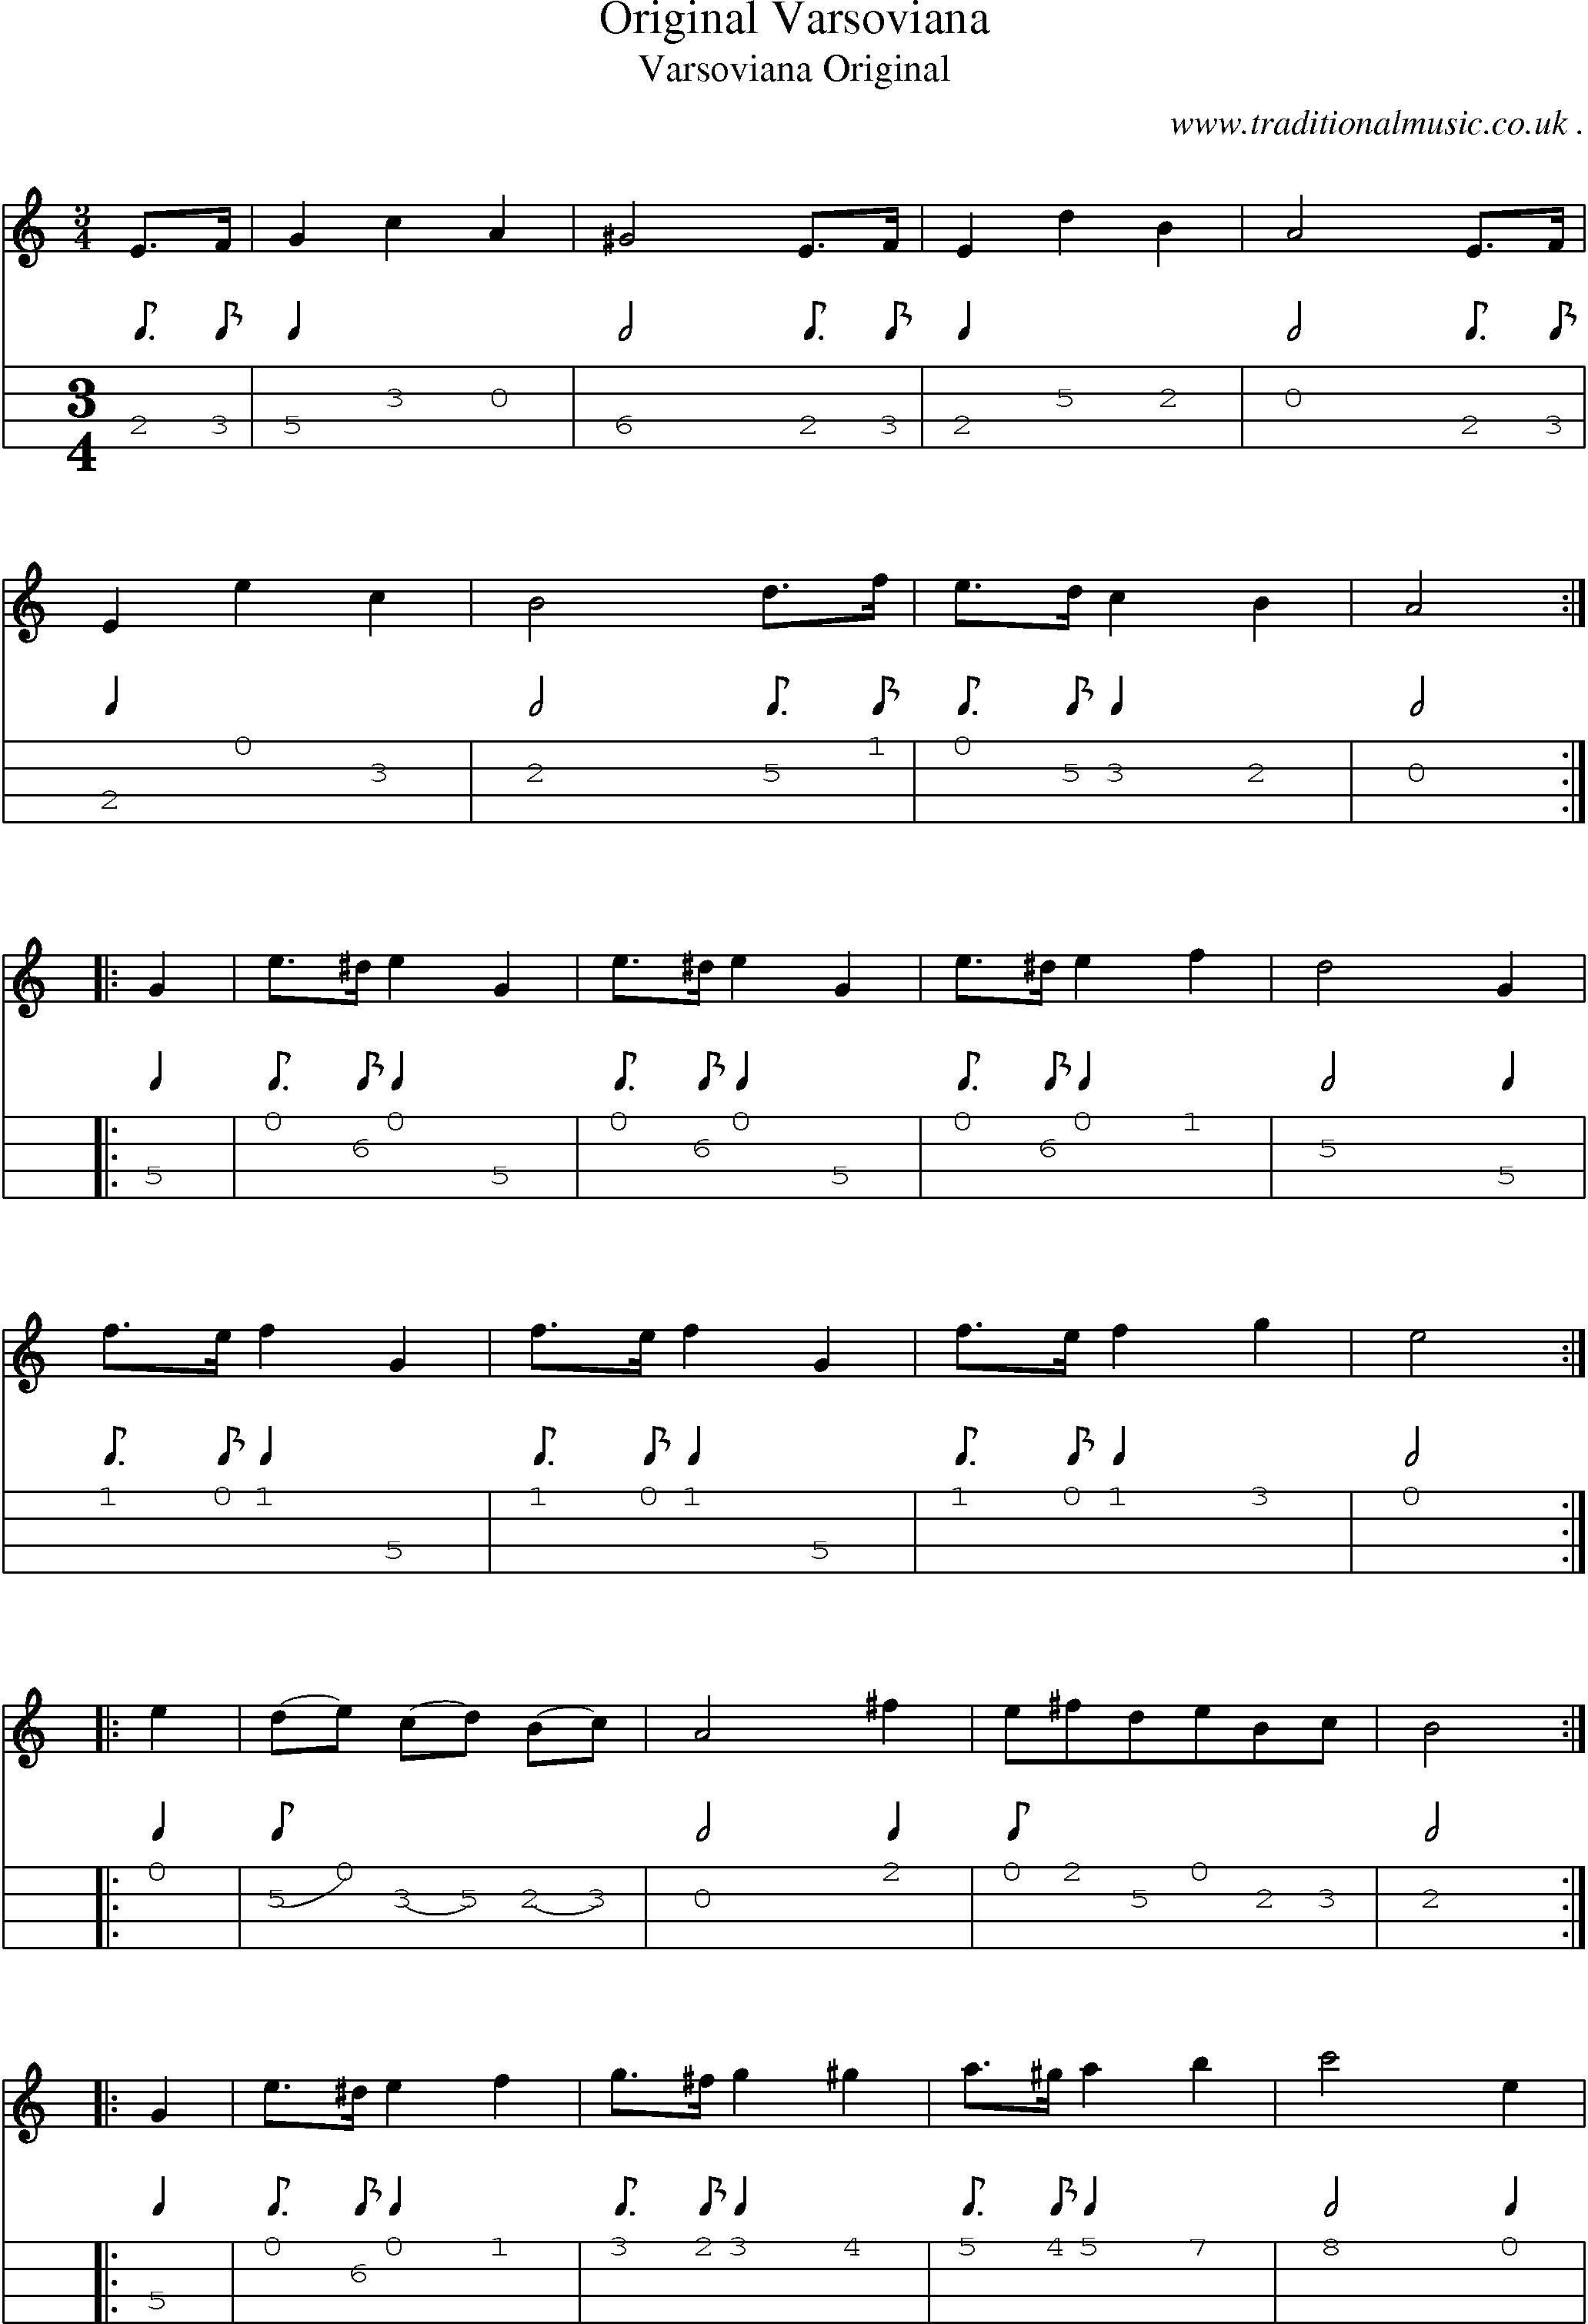 Sheet-Music and Mandolin Tabs for Original Varsoviana